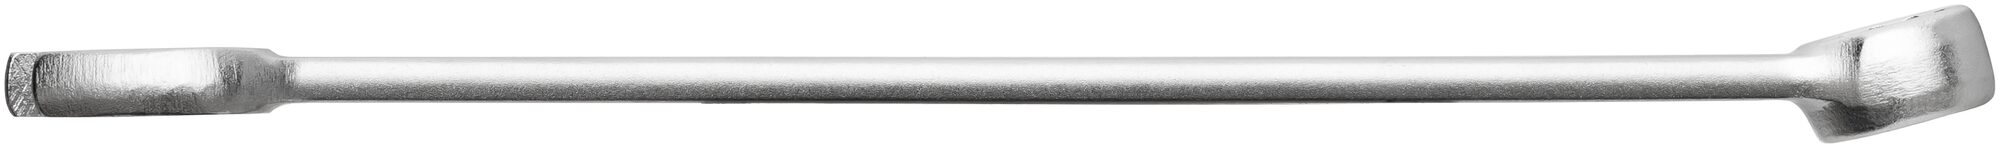 HAZET Ring-Maulschlüssel 600N-21 · Außen Doppel-Sechskant-Tractionsprofil · 21 mm